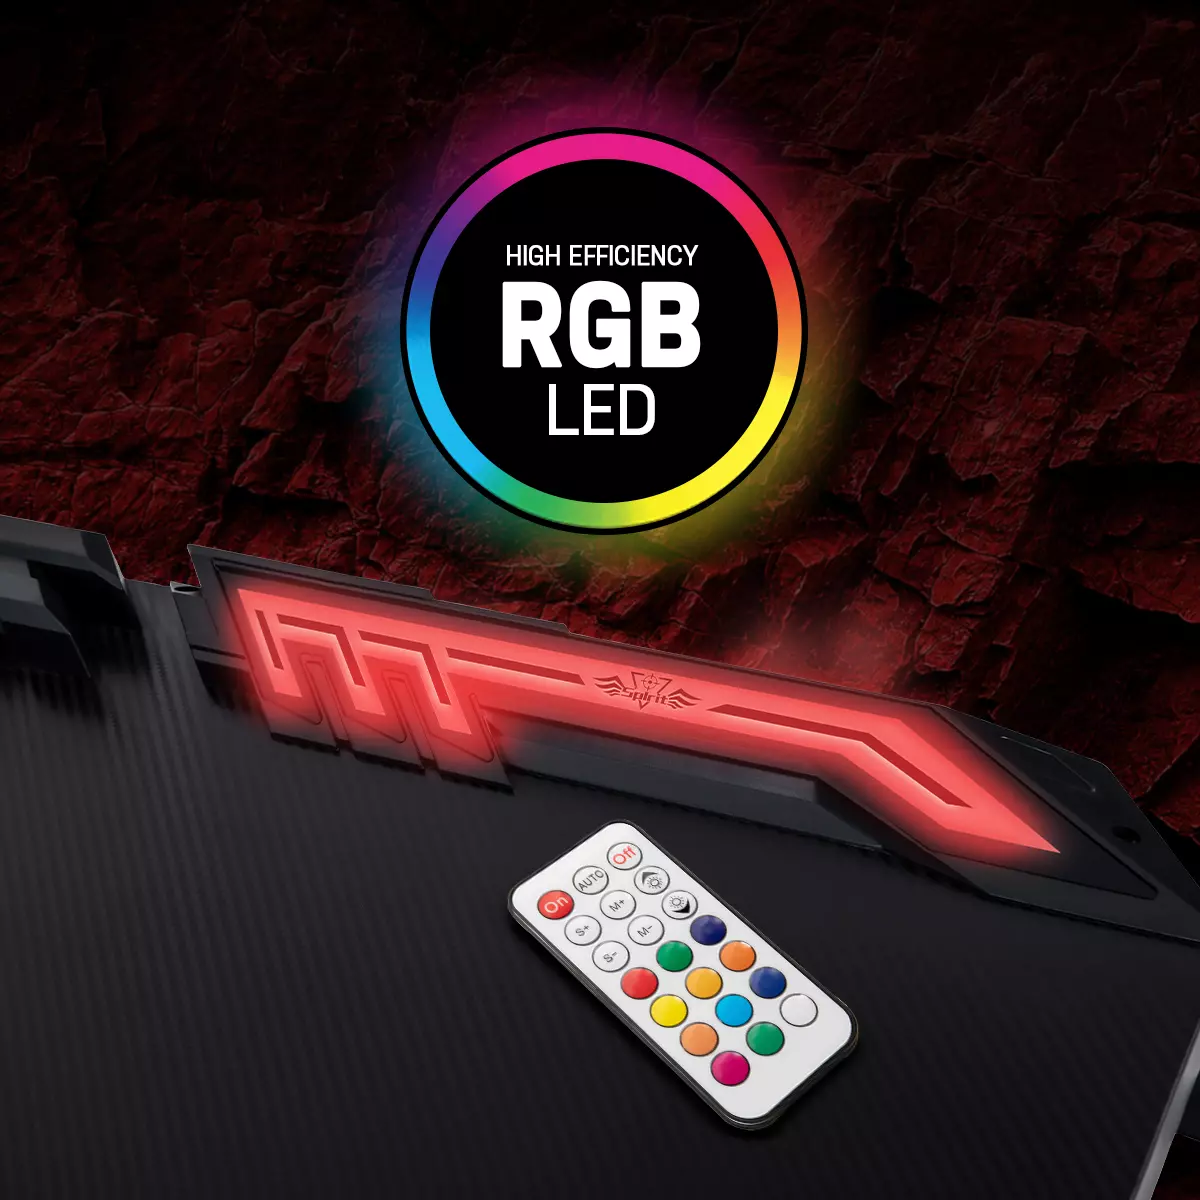 Die RGB-Beleuchtung des Gaming-Schreibtischs ist über die Fernbedienung steuerbar